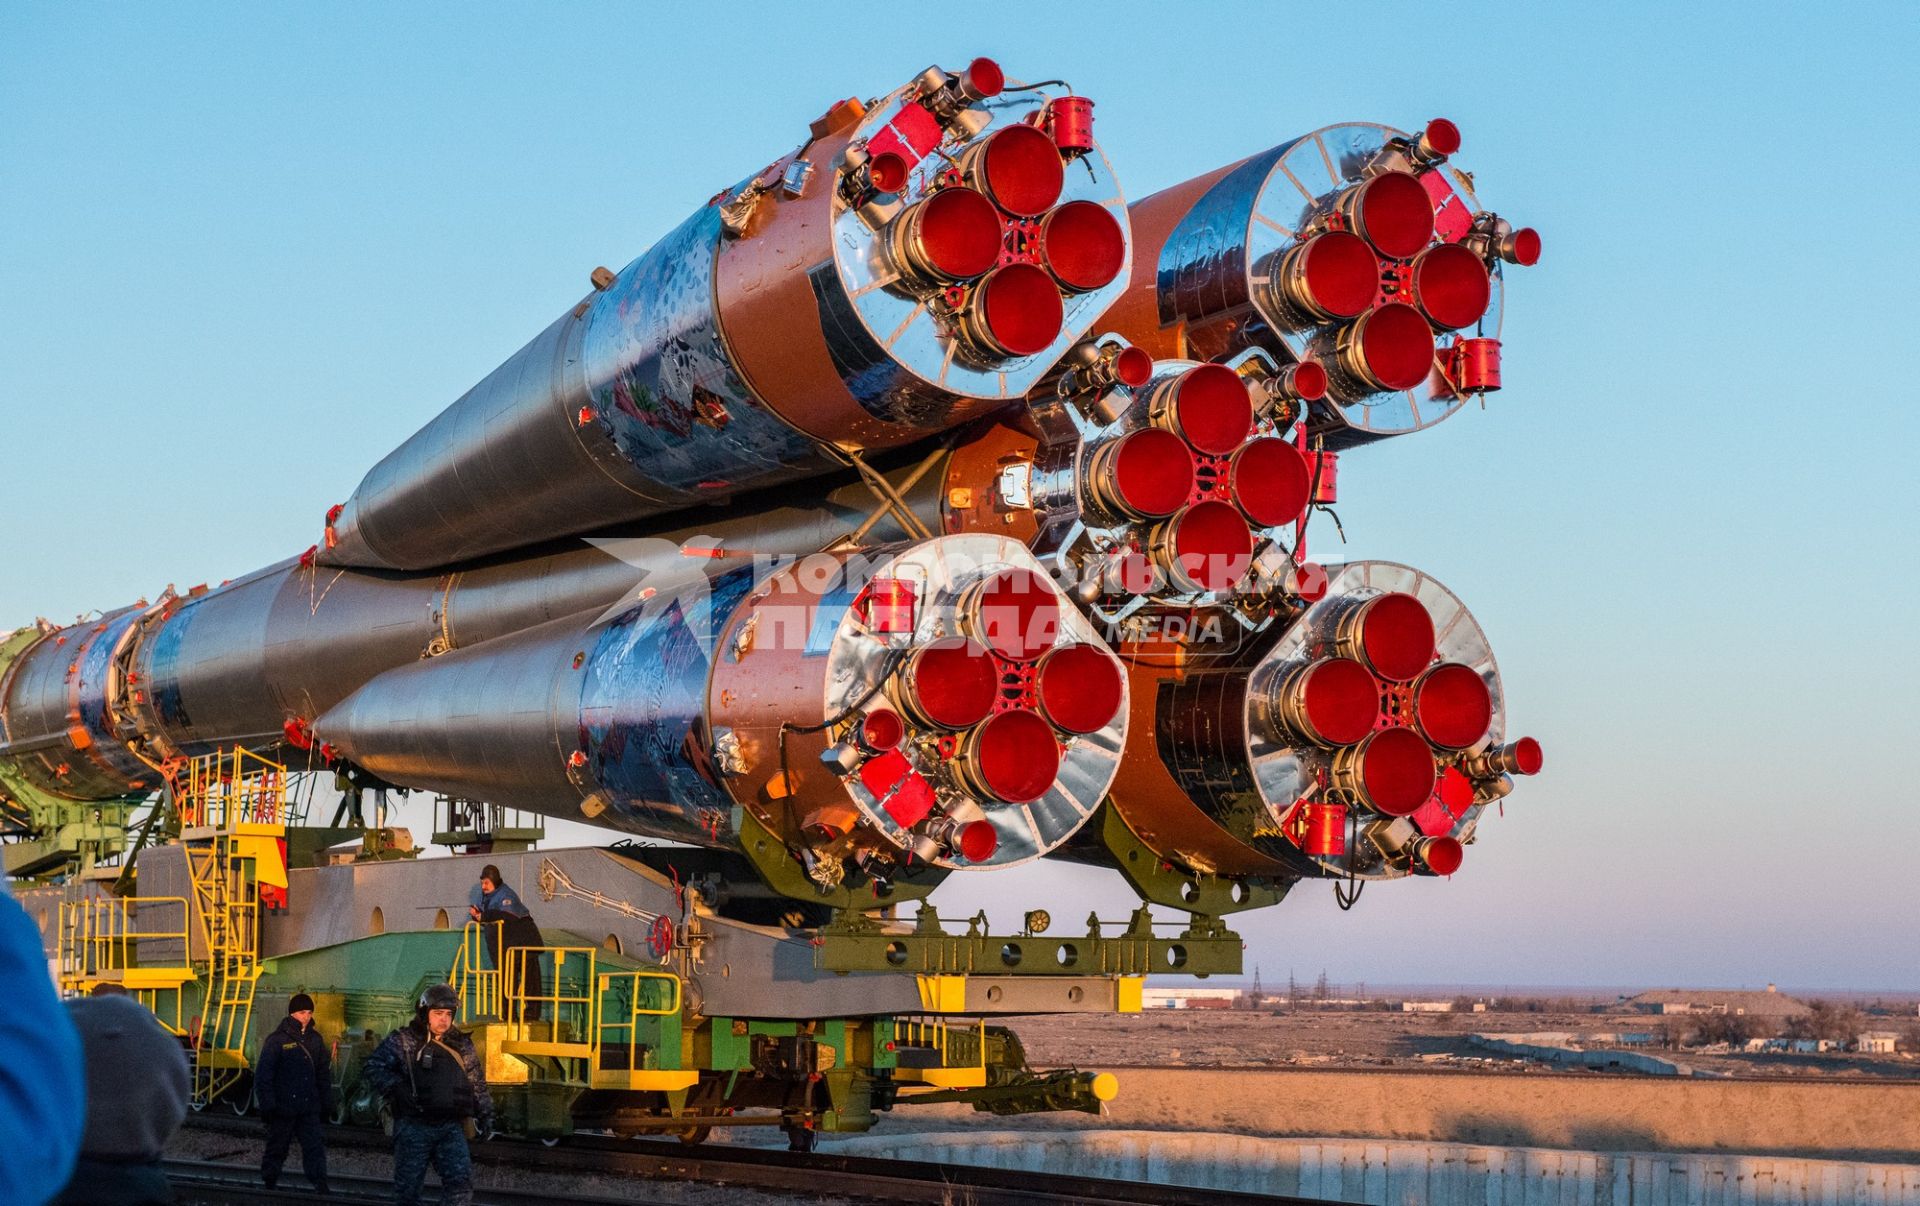 Транспортировка ракеты-носителя `Союз-ФГ` с олимпийской символикой Сочи-2014 на борту и с пилотируемым кораблем `Союз ТМА-11М` для установки на `Гагаринский старт` космодрома `Байконур`.